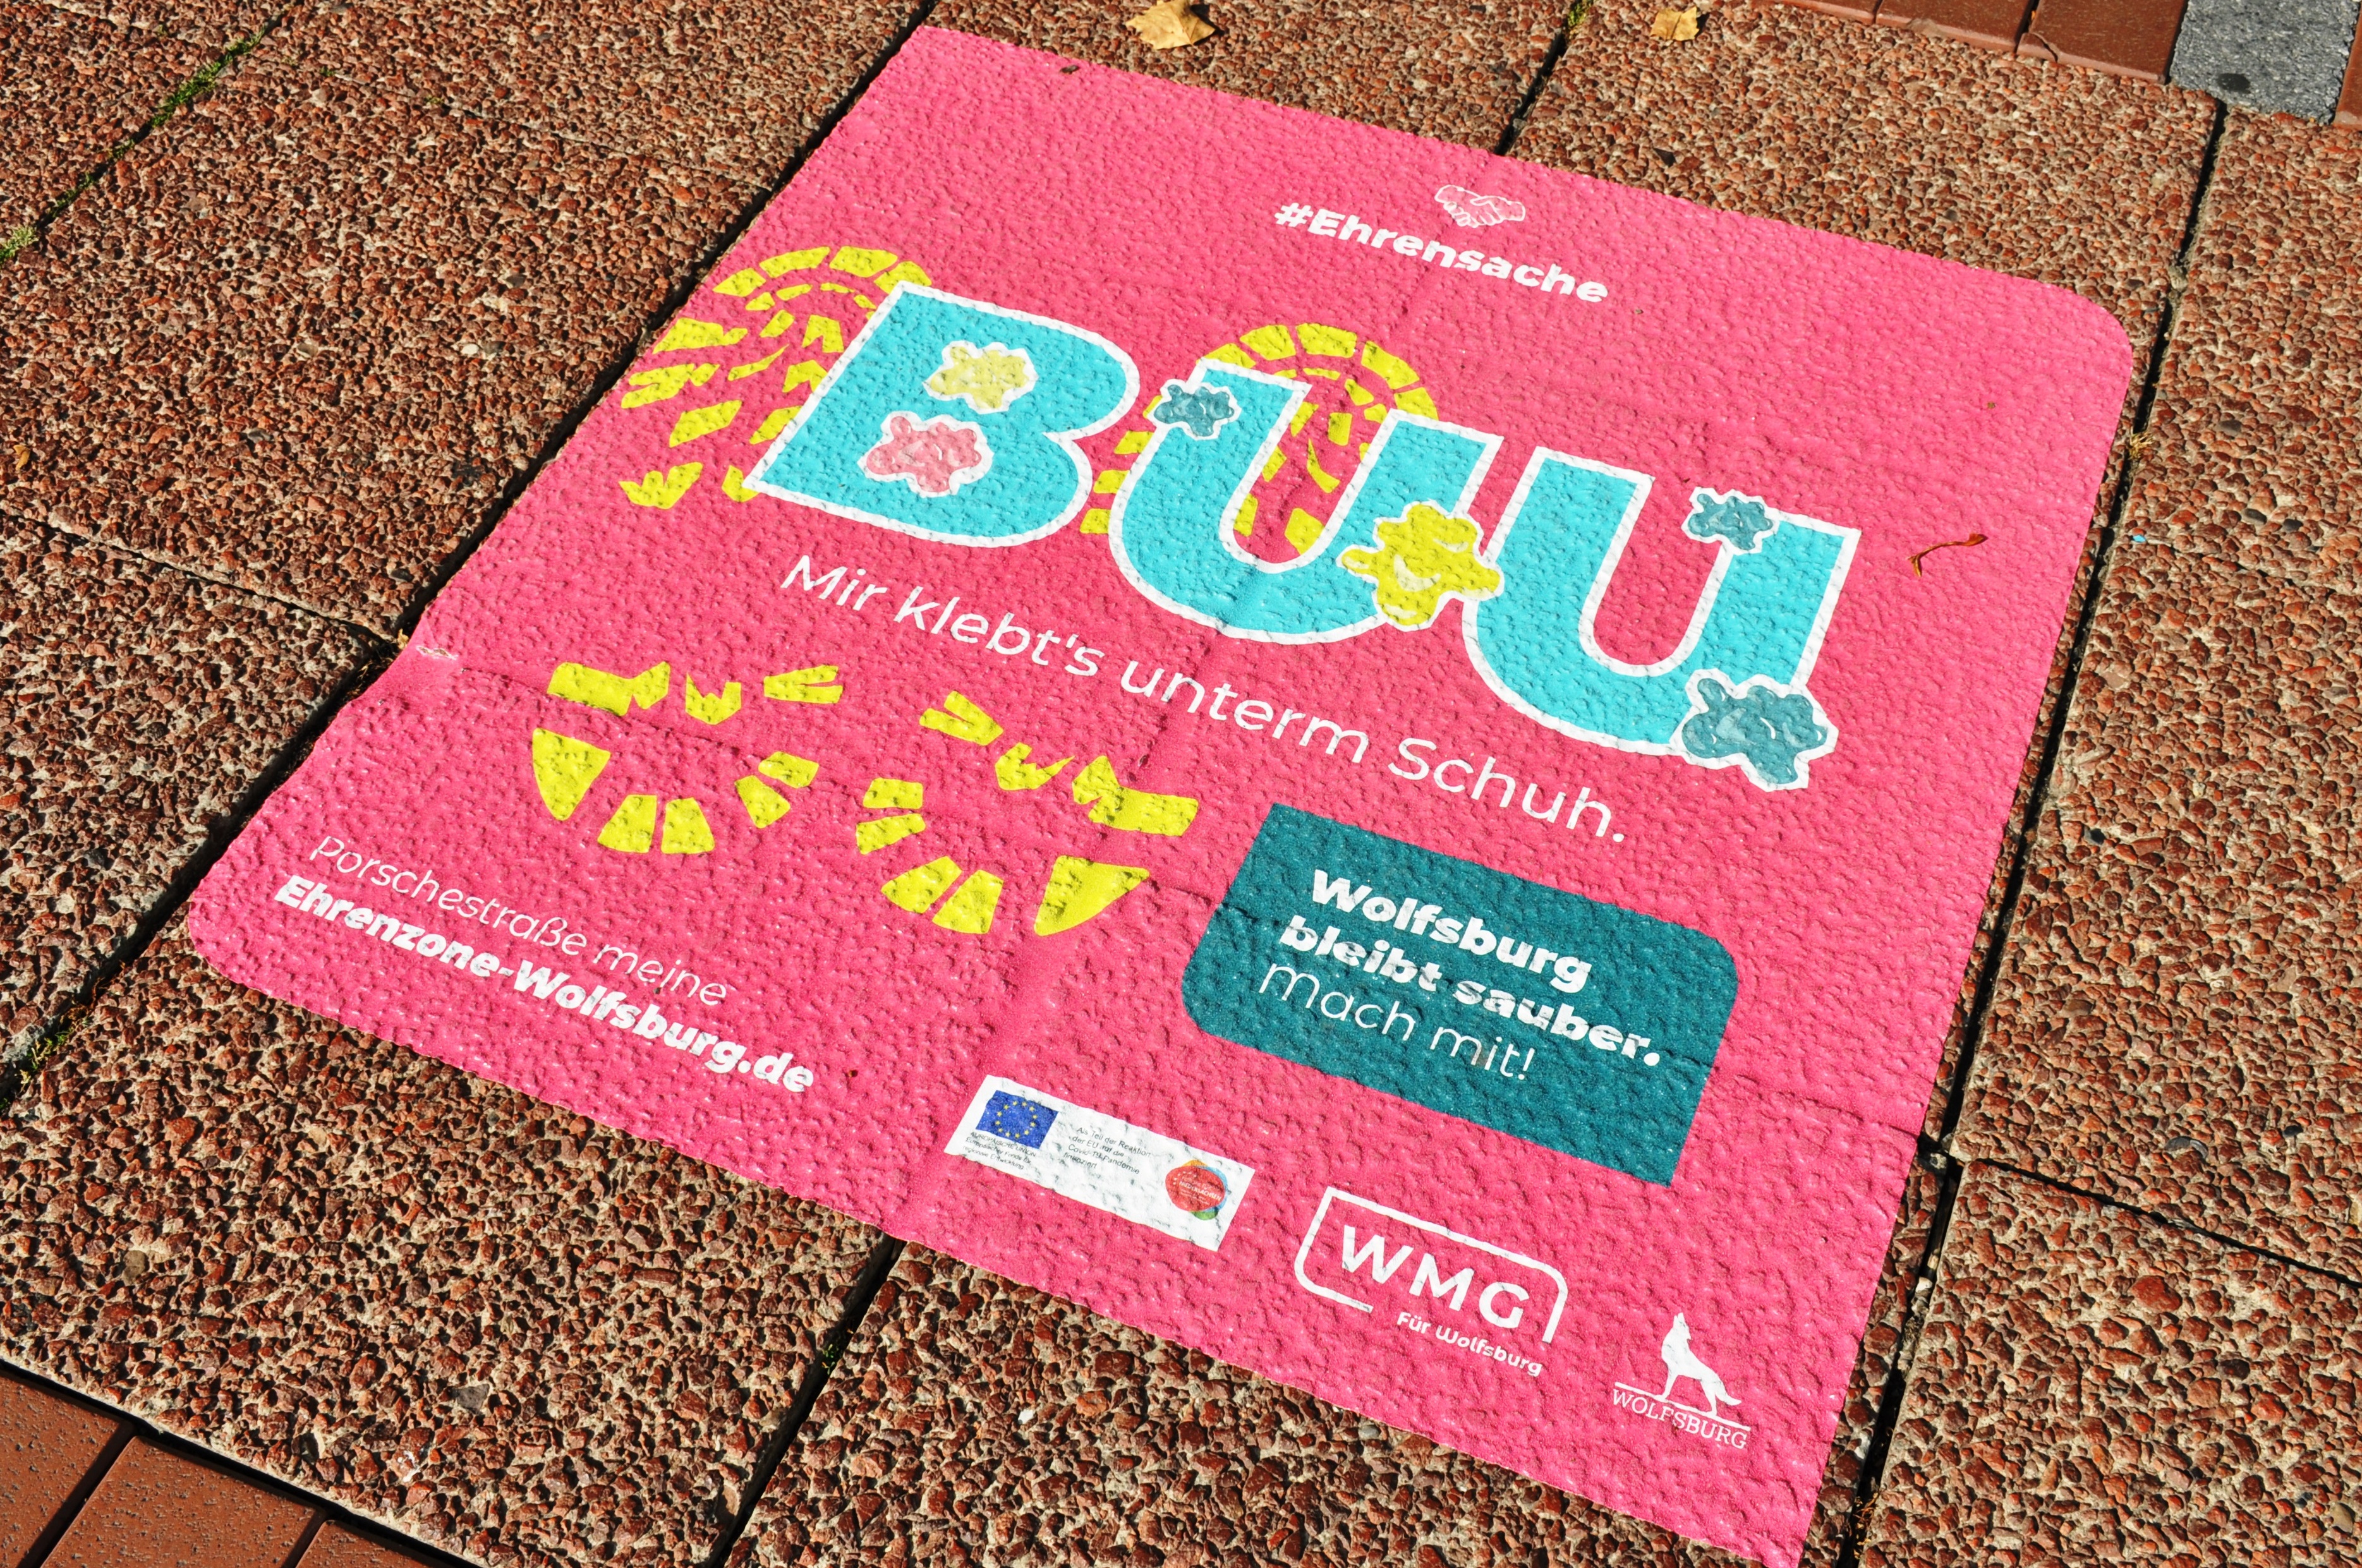 Kampagne zur Sauberkeit und Sicherheit in der Innenstadt "Ehrensache" - Aufkleber "Buu"